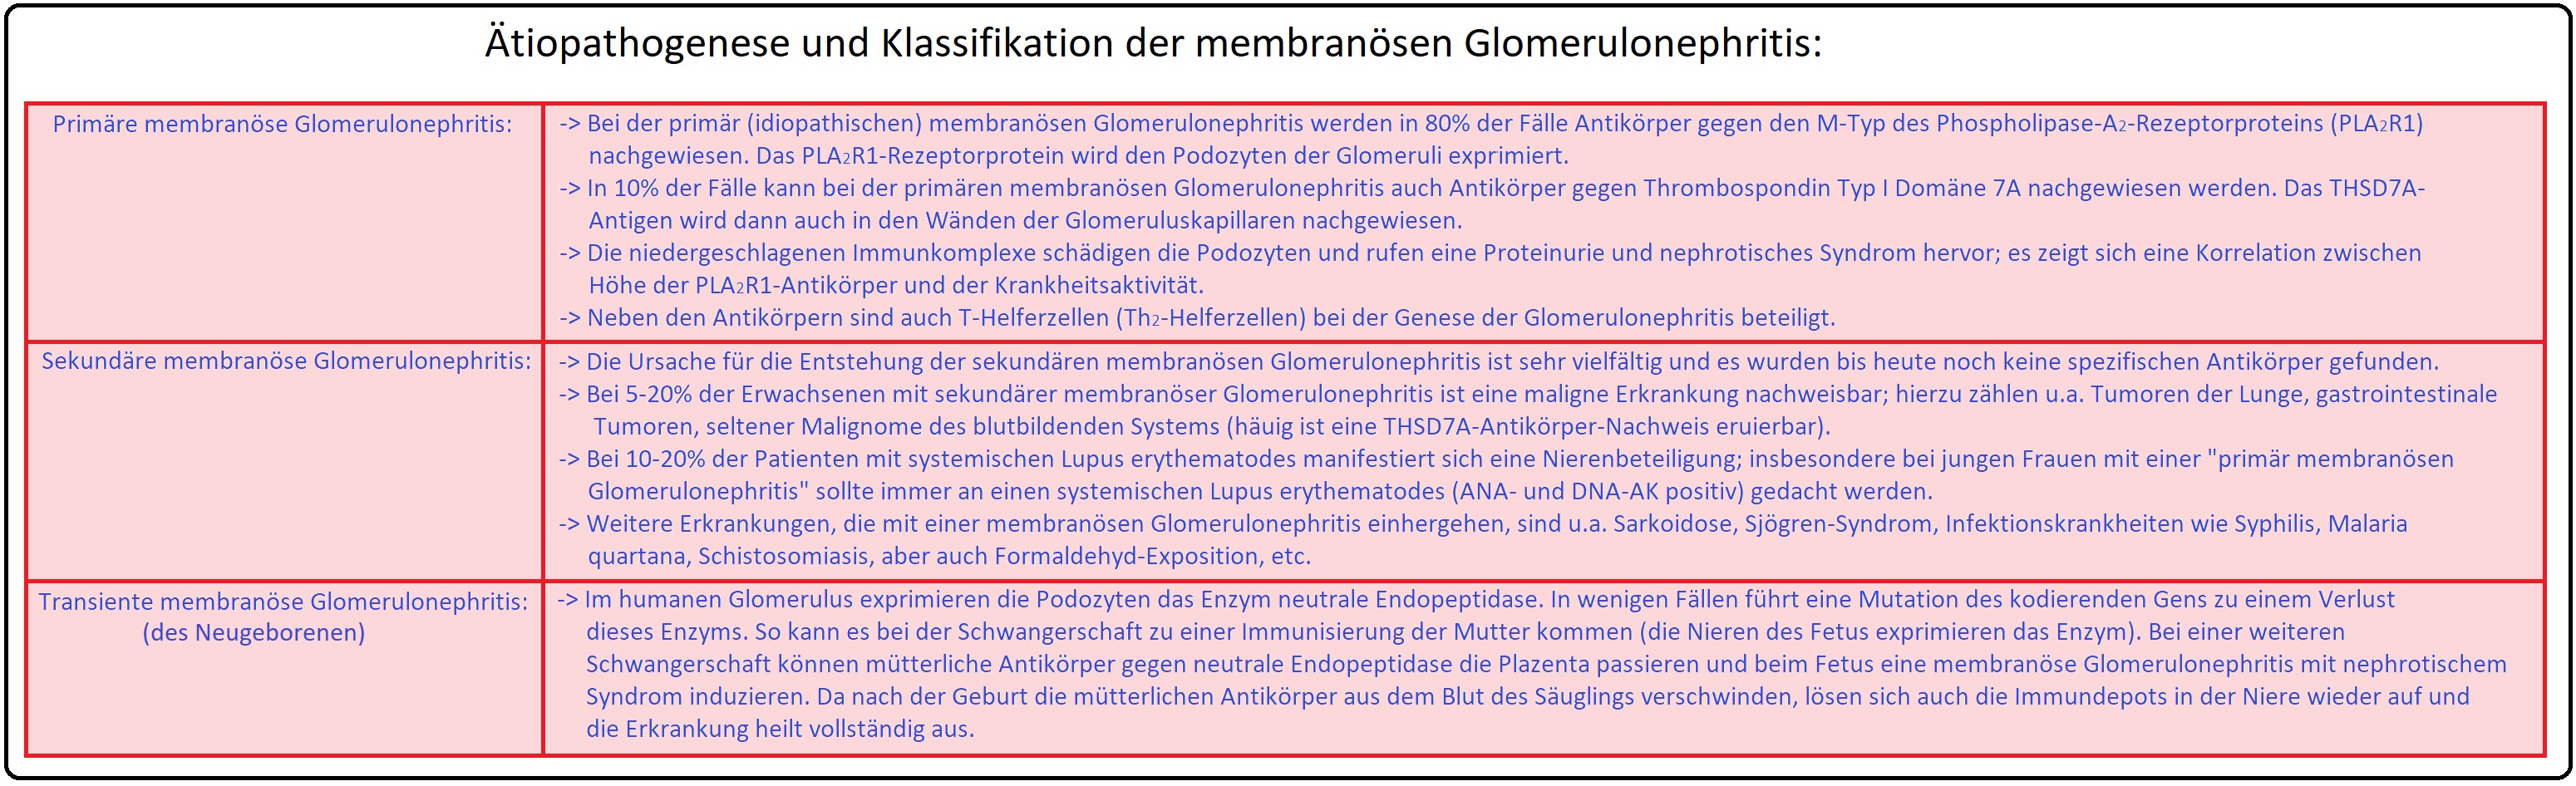 1116 Ätiopathogenese und Klassifikation der membranösen Glomerulonephritis